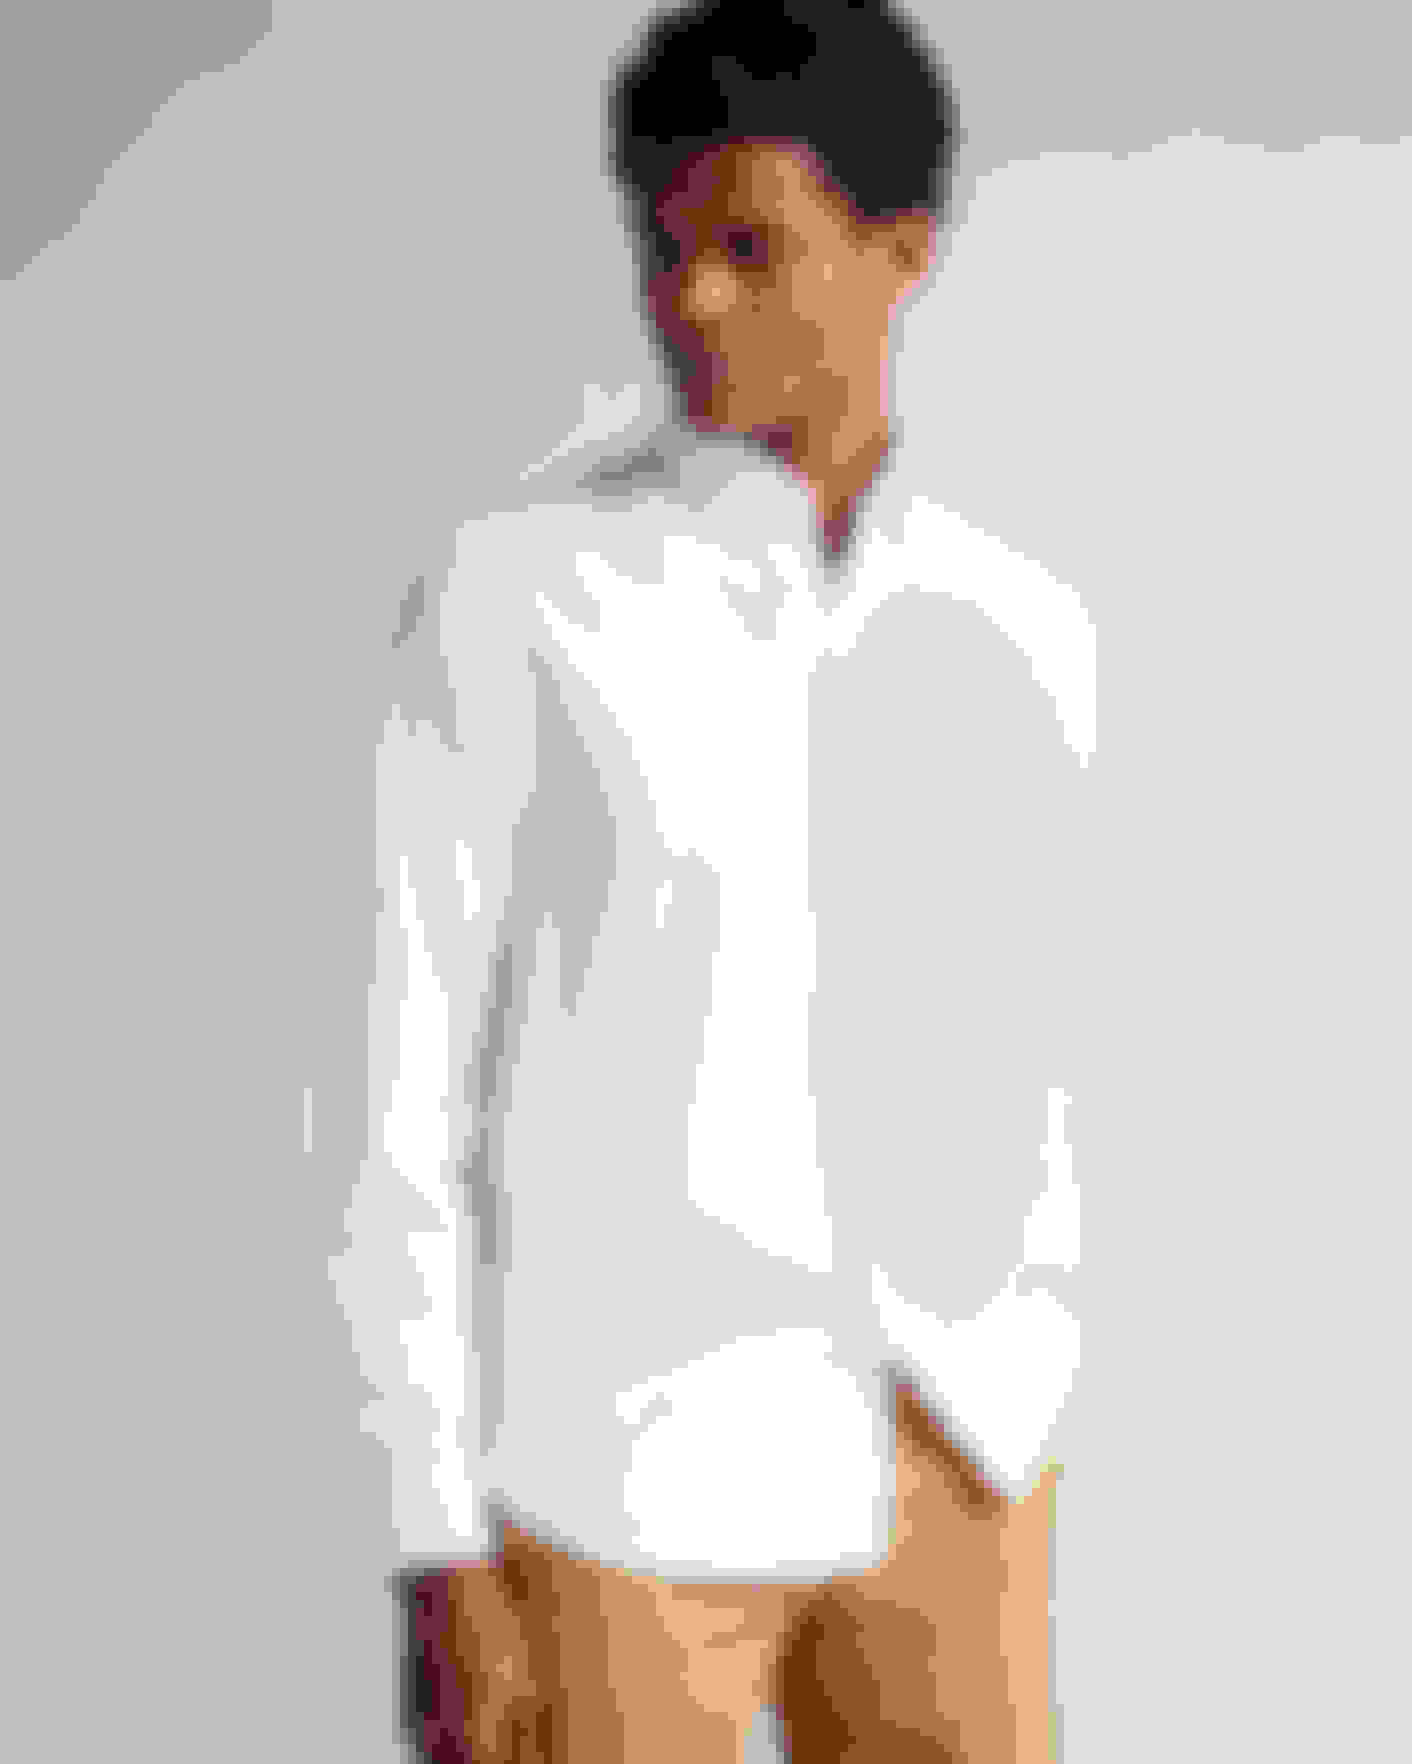 White Long Sleeve Oxford Shirt Ted Baker